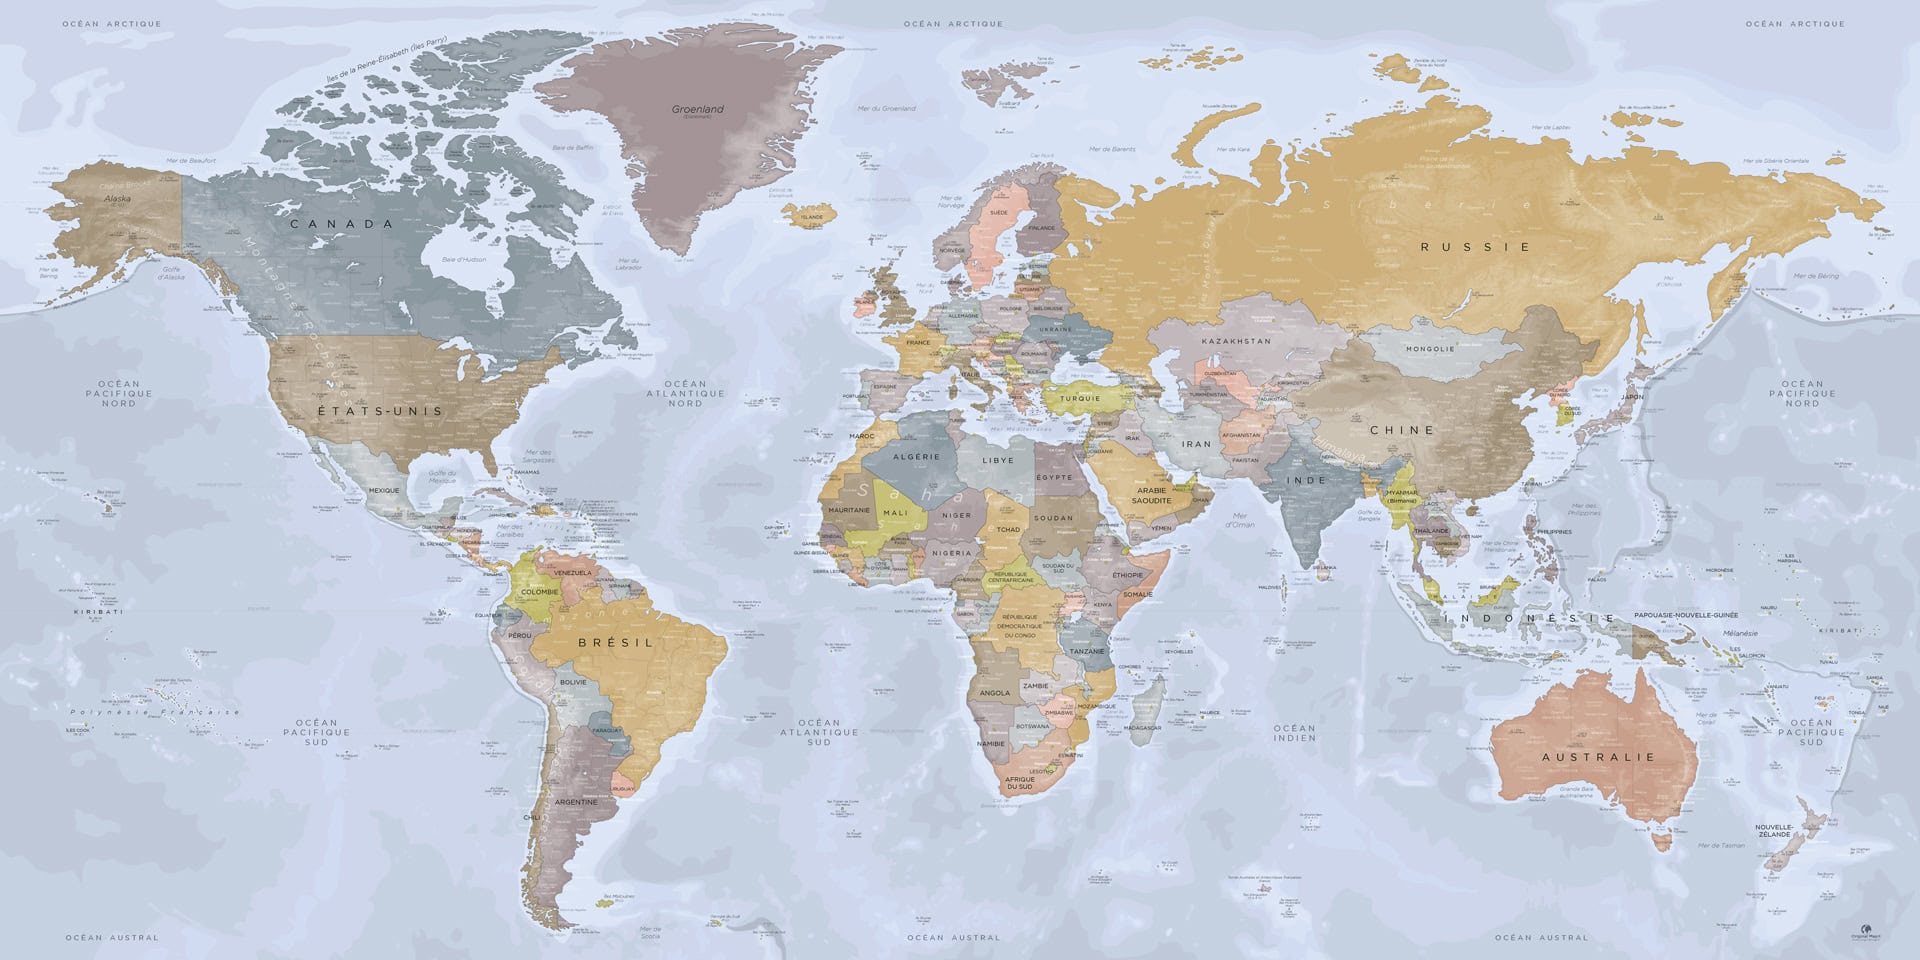 Mappemonde : grand tableau décoratif carte du monde avec reliefs